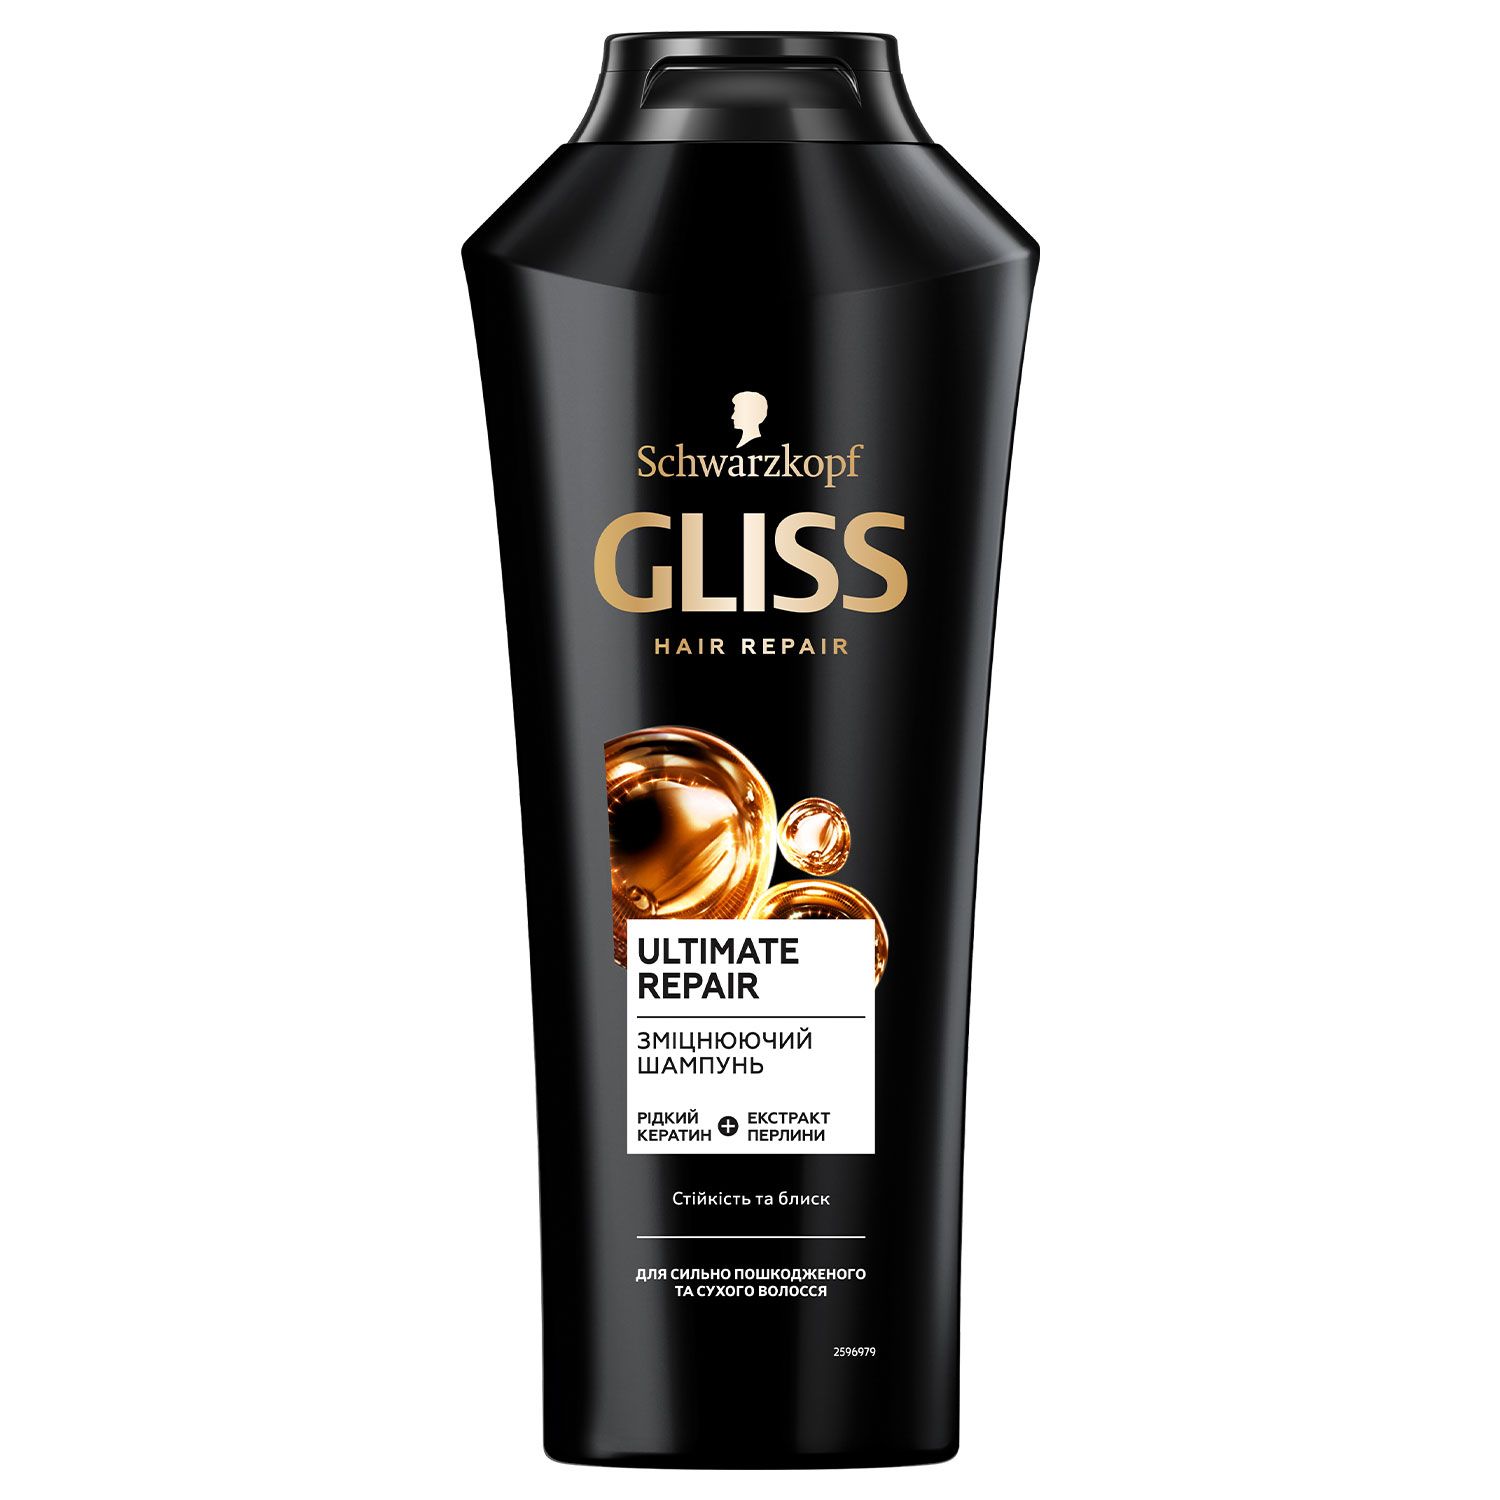 Зміцнюючий шампунь GLISS Ultimate Repair для сильно пошкодженого та сухого волосся, 400 мл